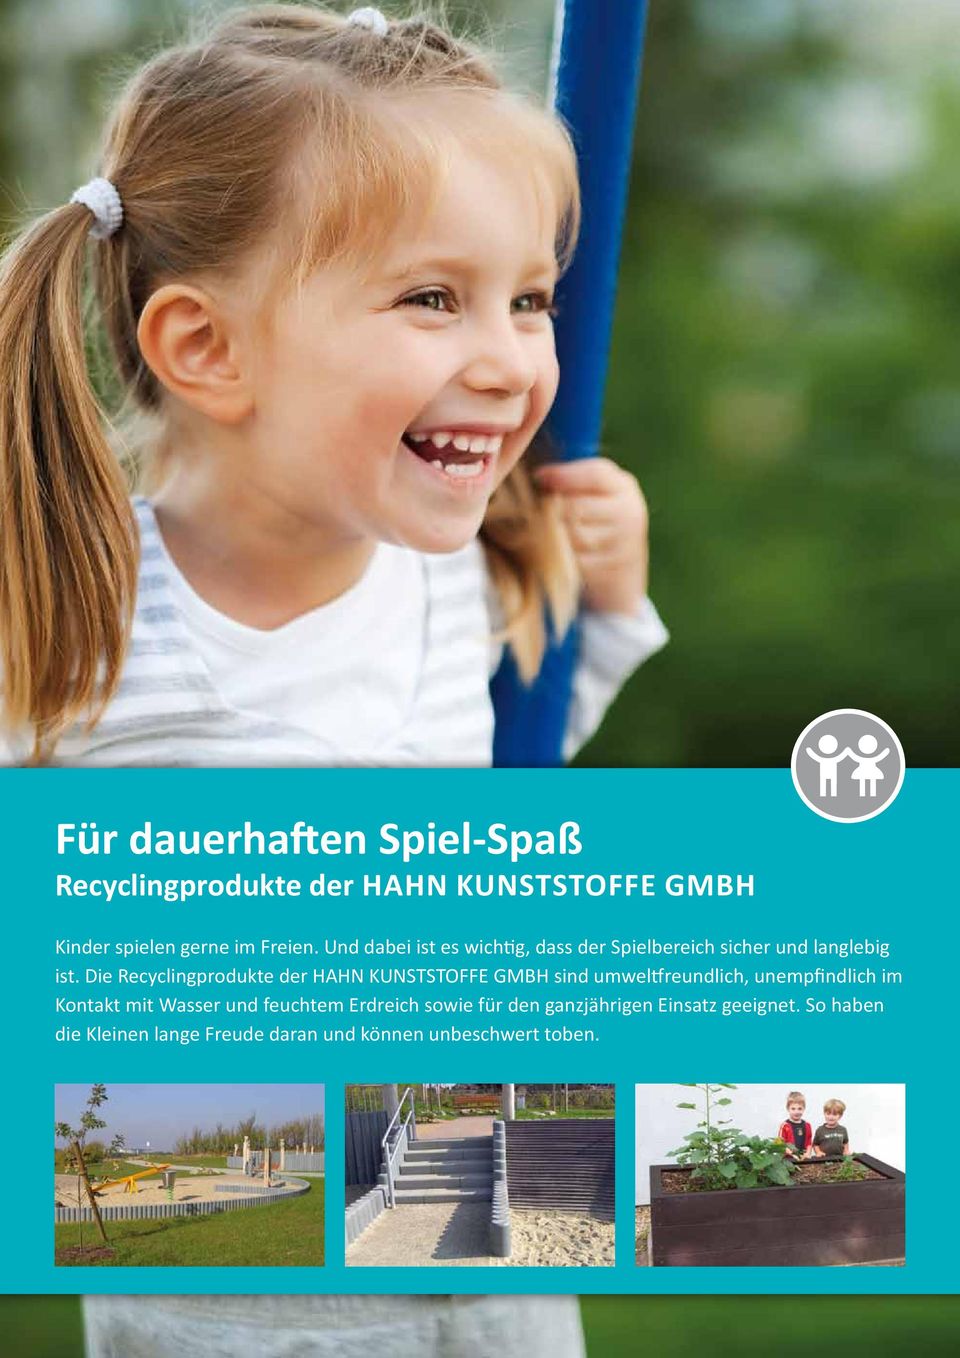 Die Recyclingprodukte der Hahn Kunststoffe GmbH sind umweltfreundlich, unempfindlich im Kontakt mit